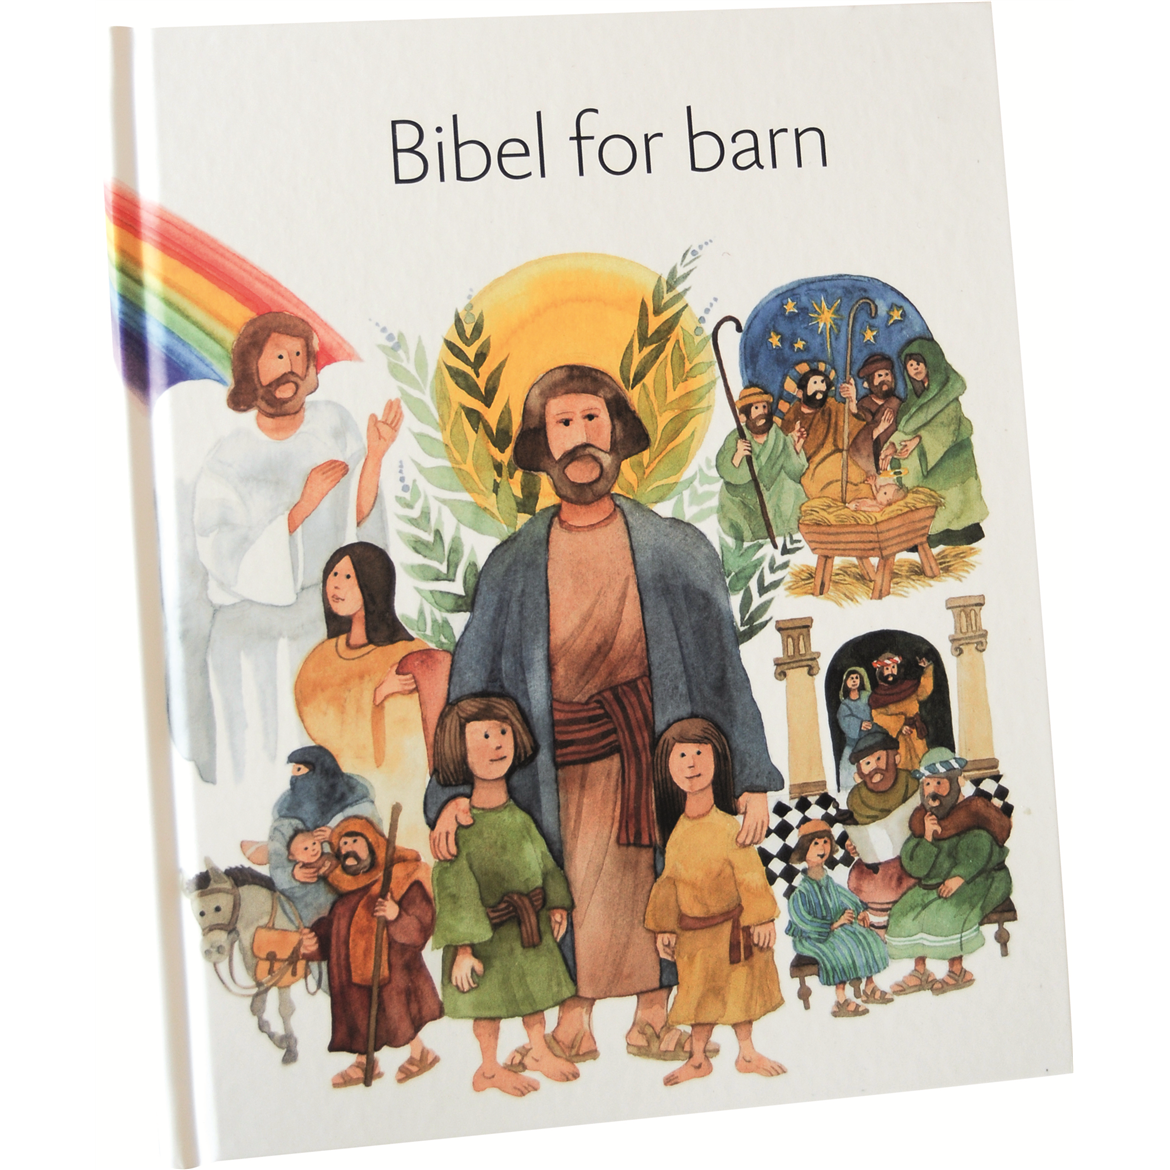 198 Bibel for barn (bm).jpg